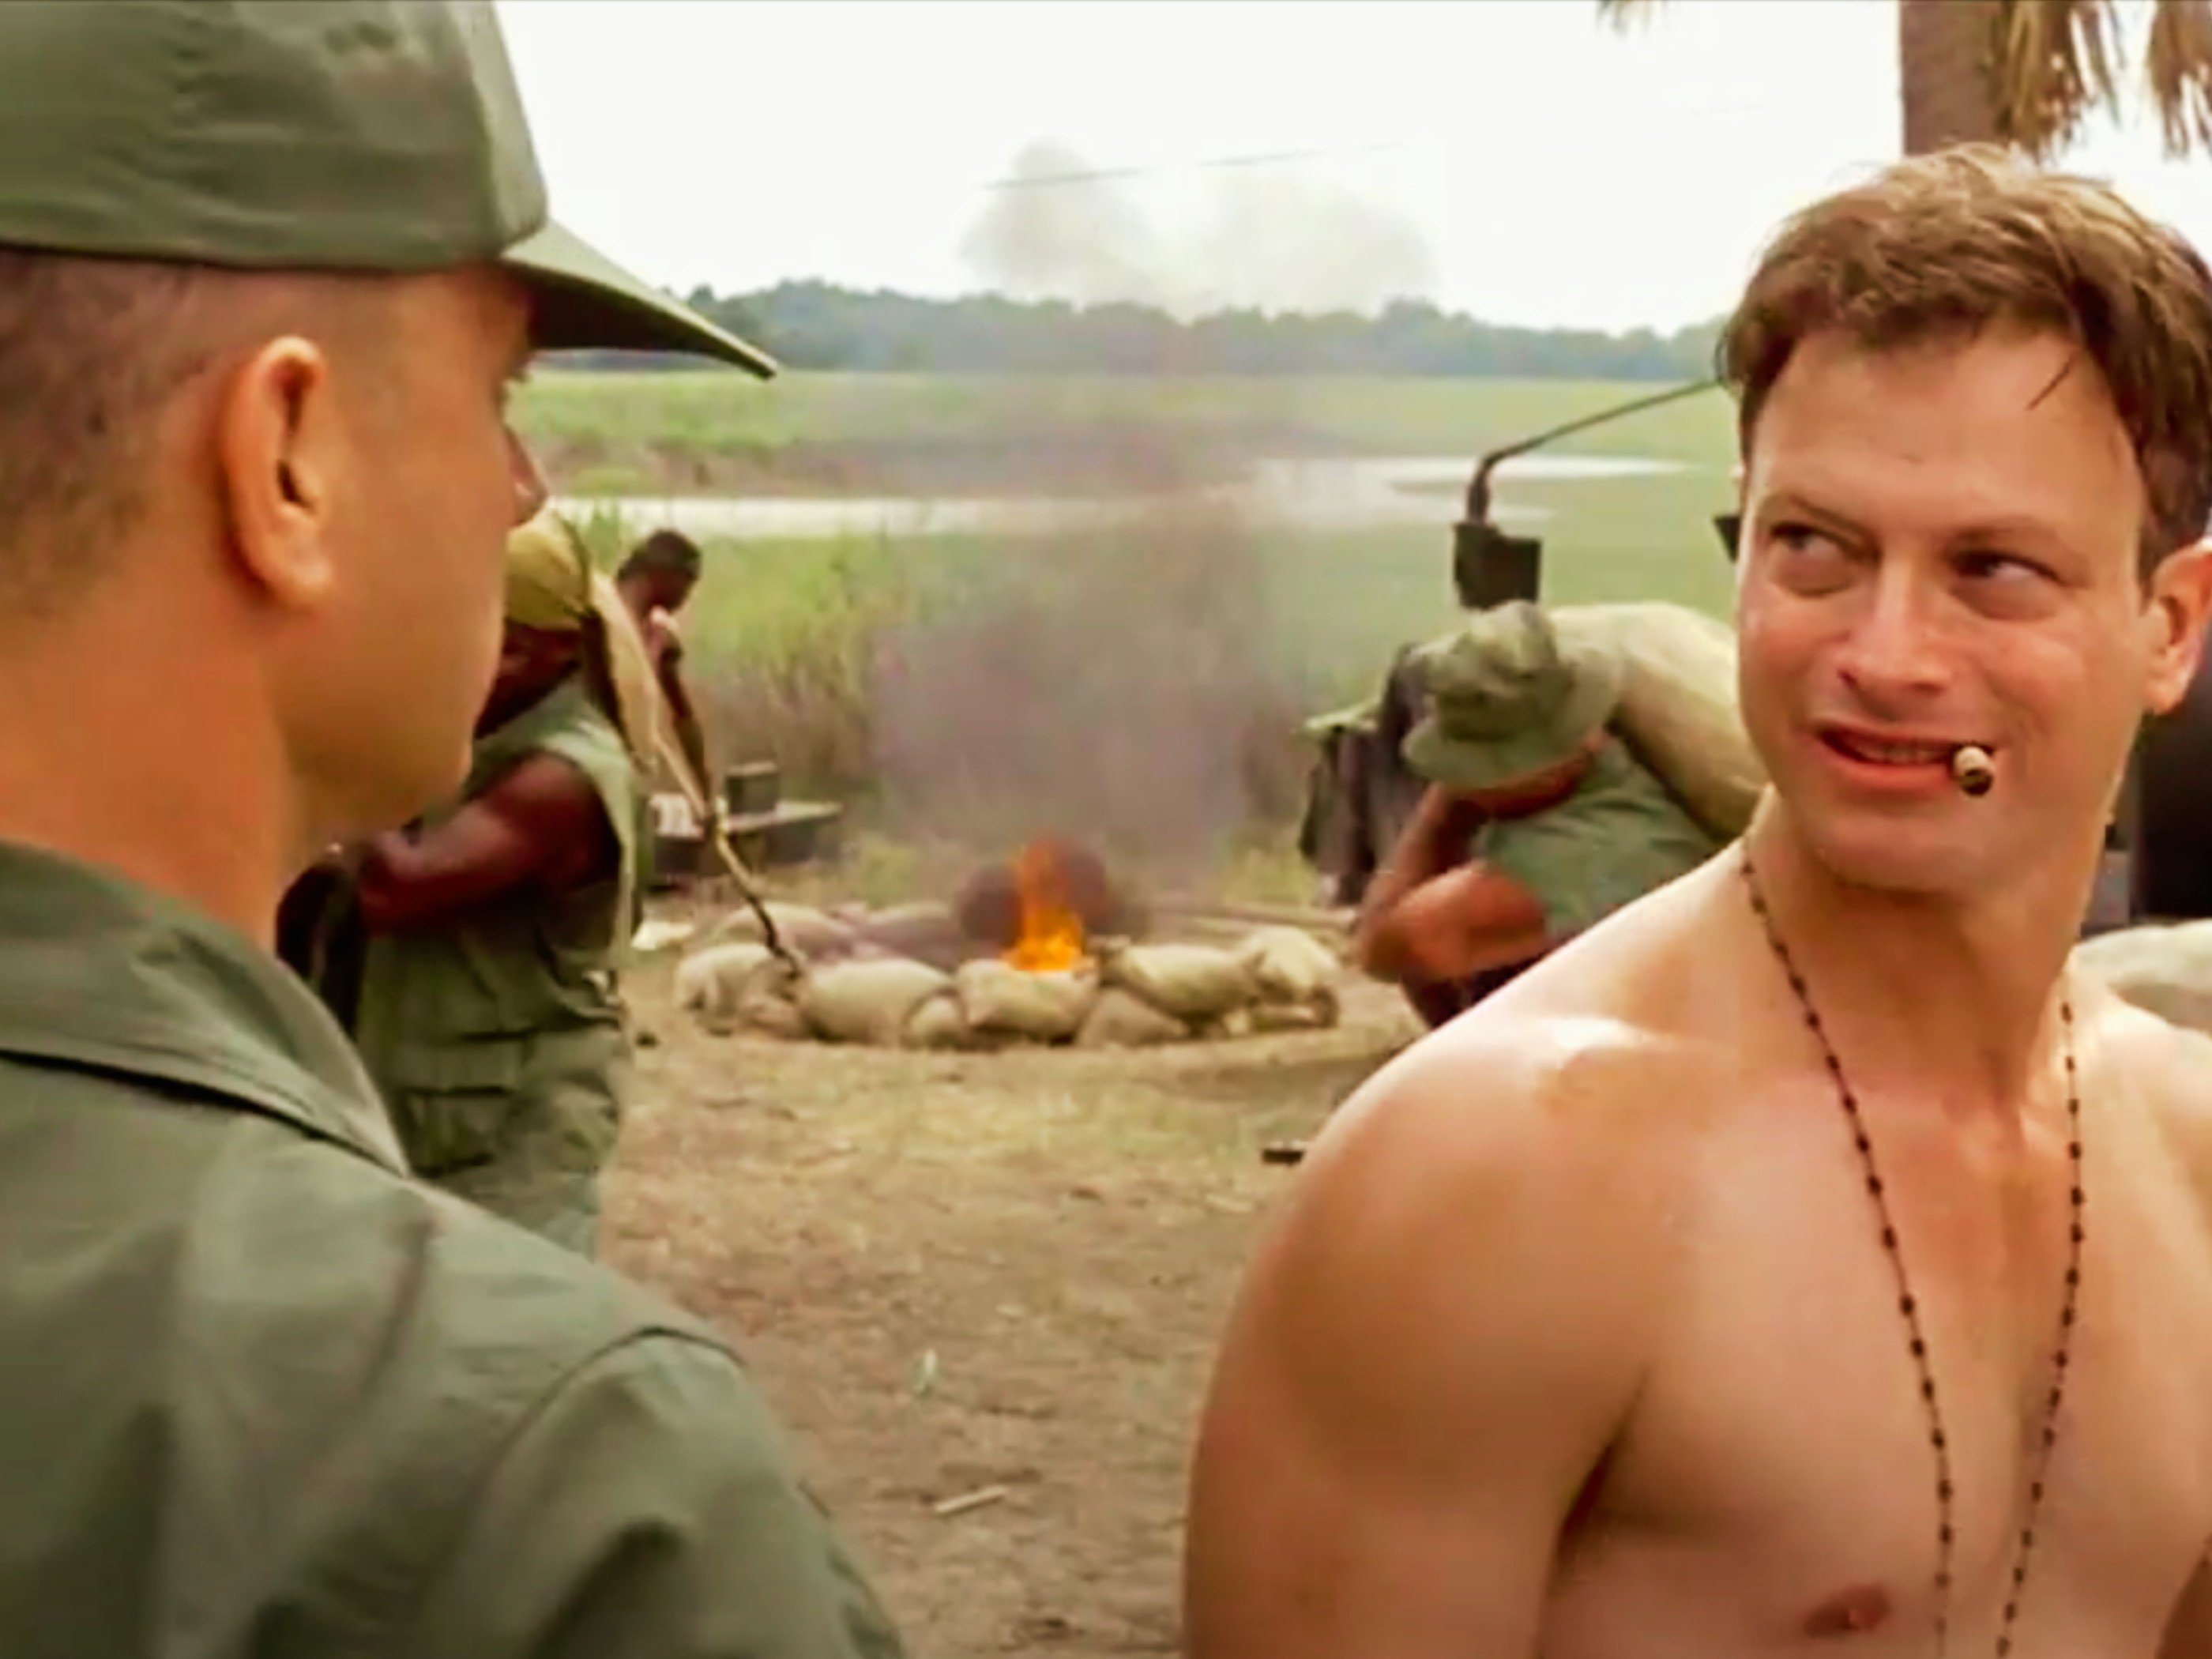 Escena de la película Forrest Gump situada en Vietnam en la que aparecen el propio Forrest y el teniente Dan.